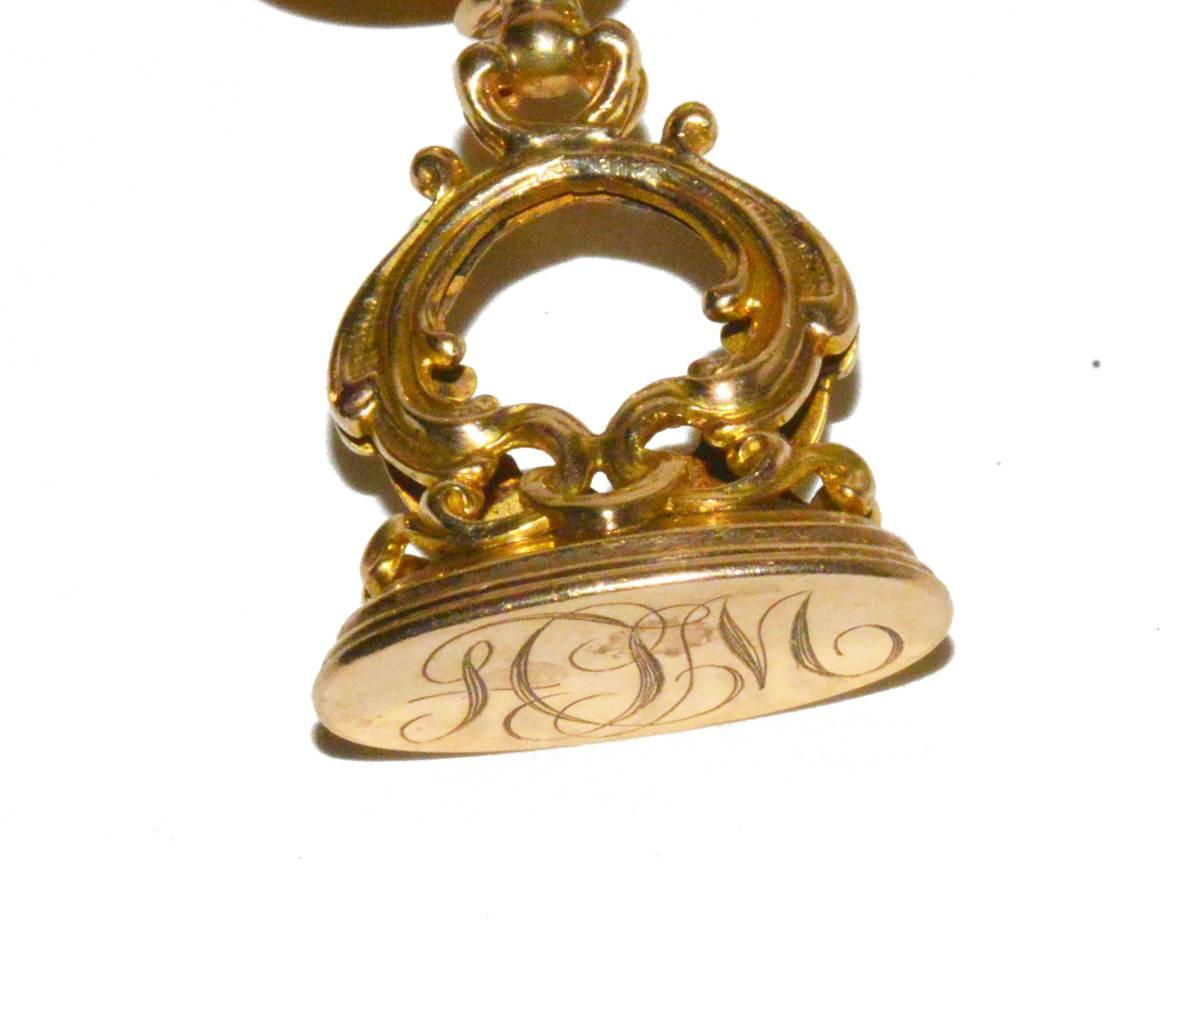 Antique Seal Collection Charm Bracelet 3